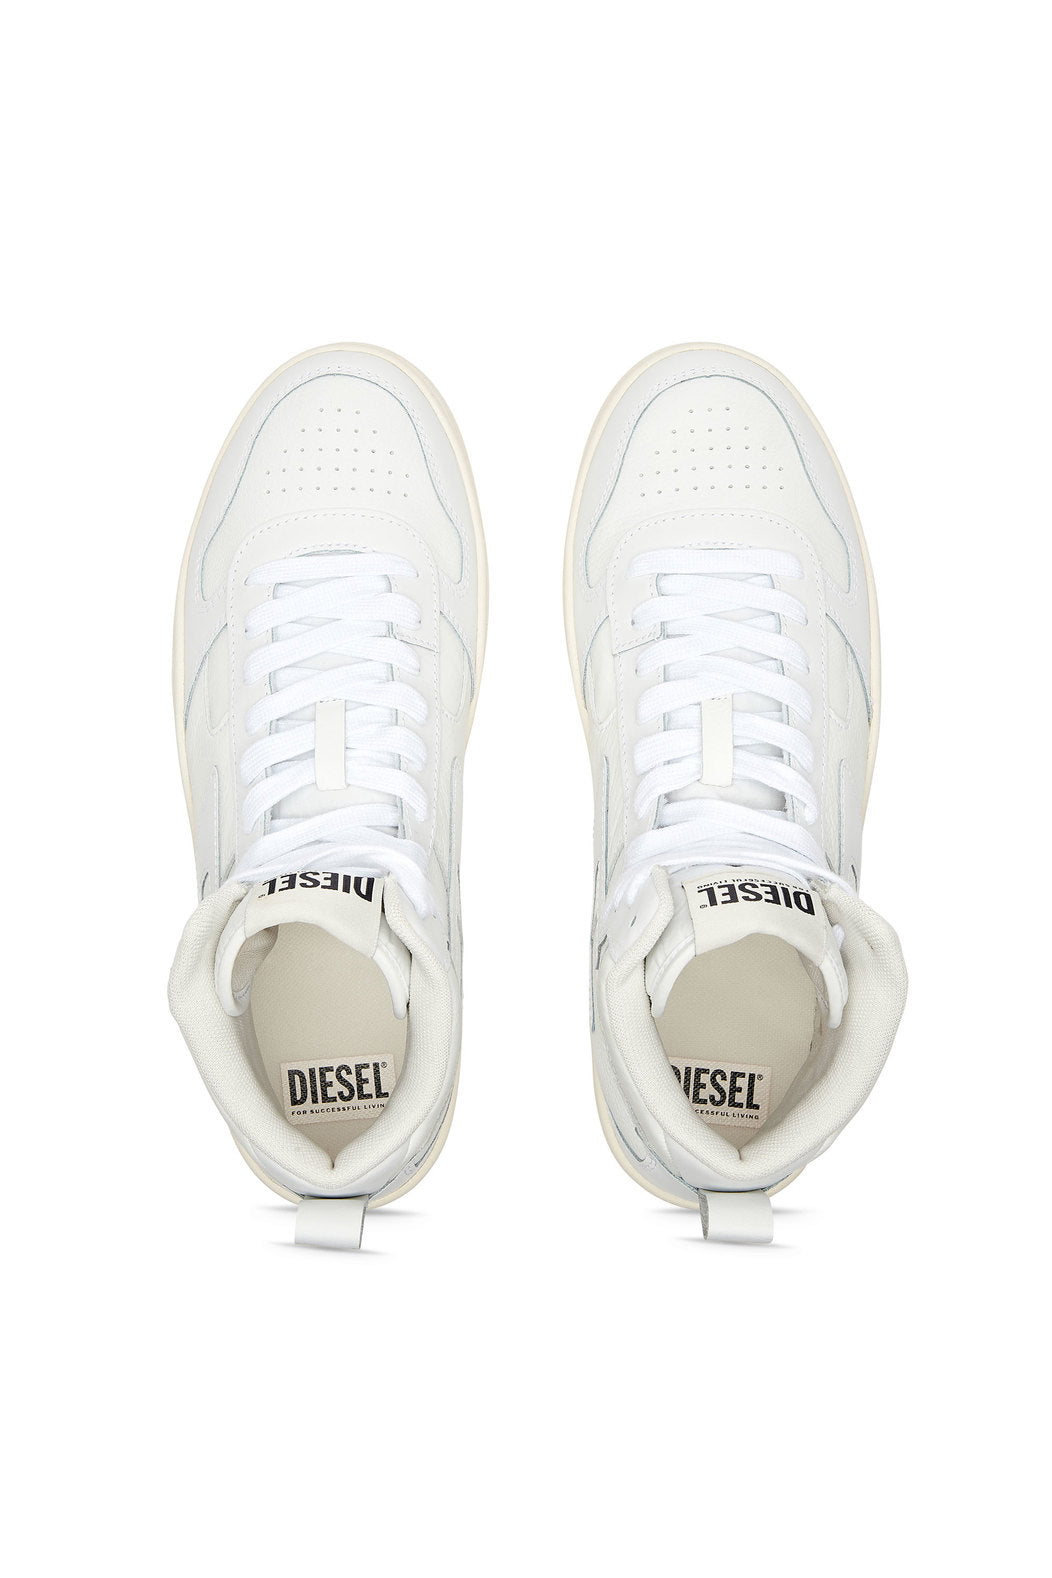 Diesel Y03205P5576 Mens S-Ukiyo V2 Mid Sneakers White